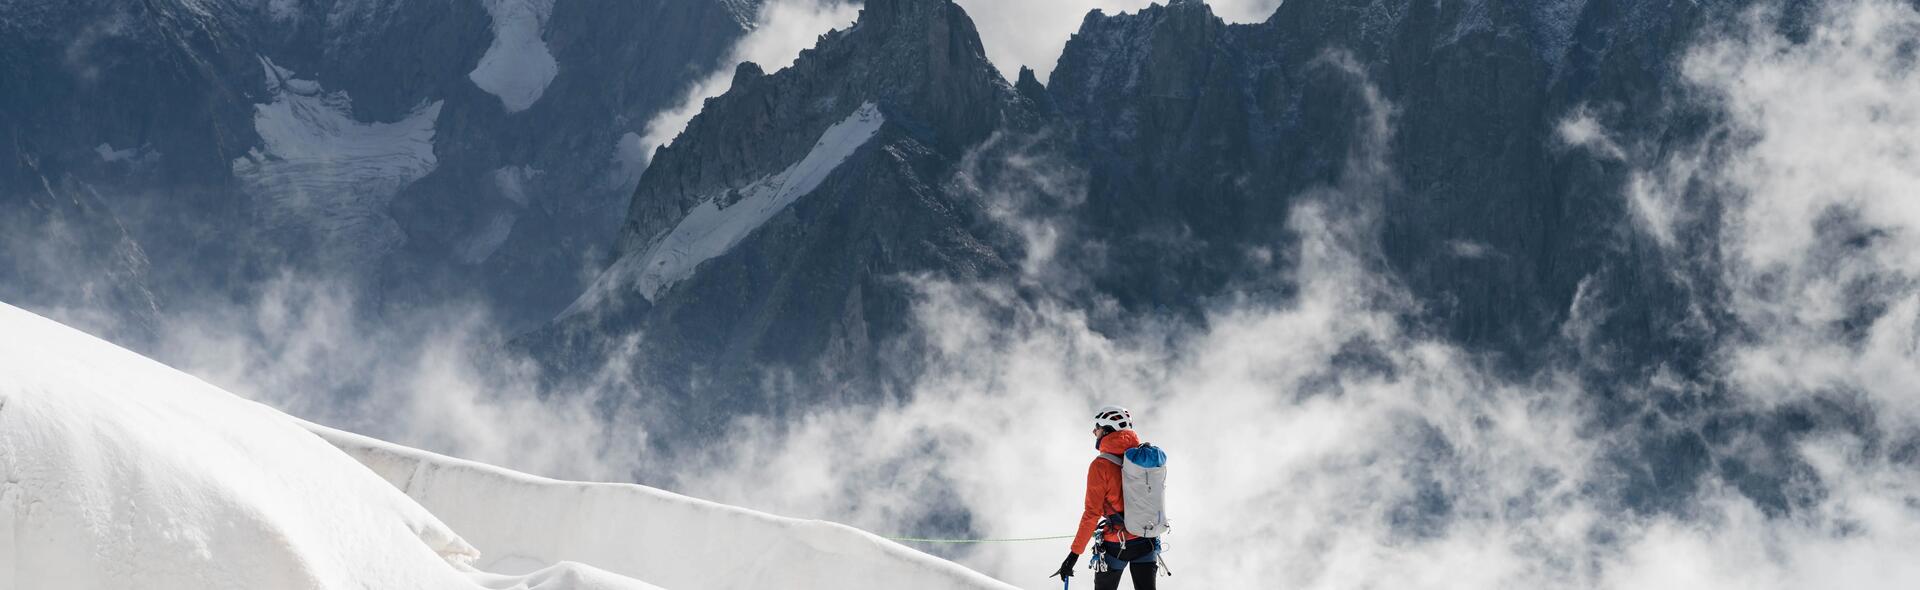 osoba wędrująca po wysokich górach w kasku i odzieży alpinistycznej